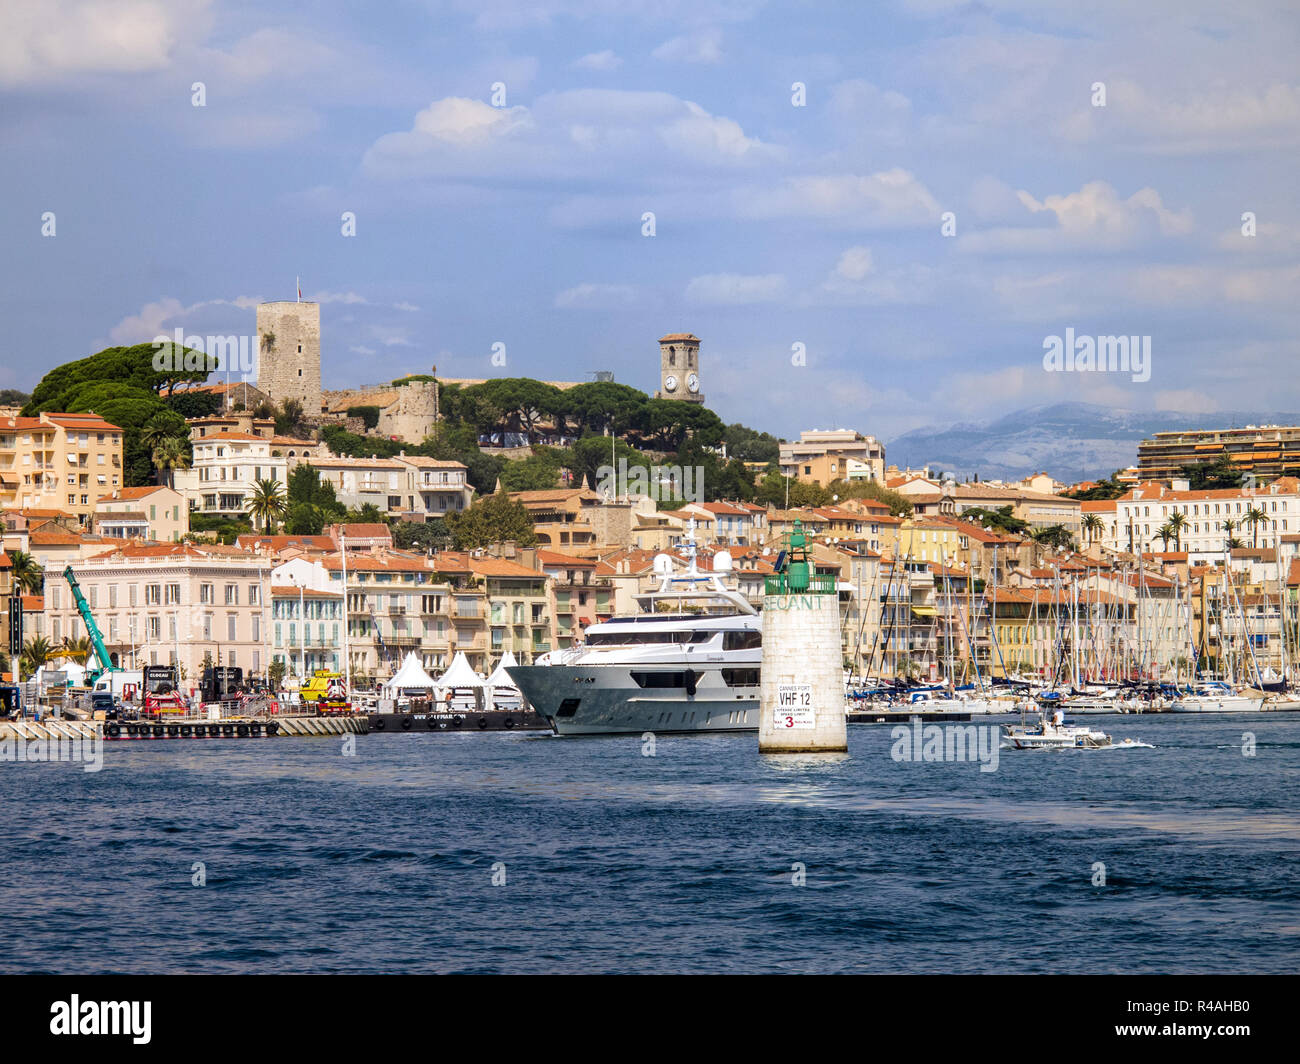 Le Suquet, Cannes France Stock Photo